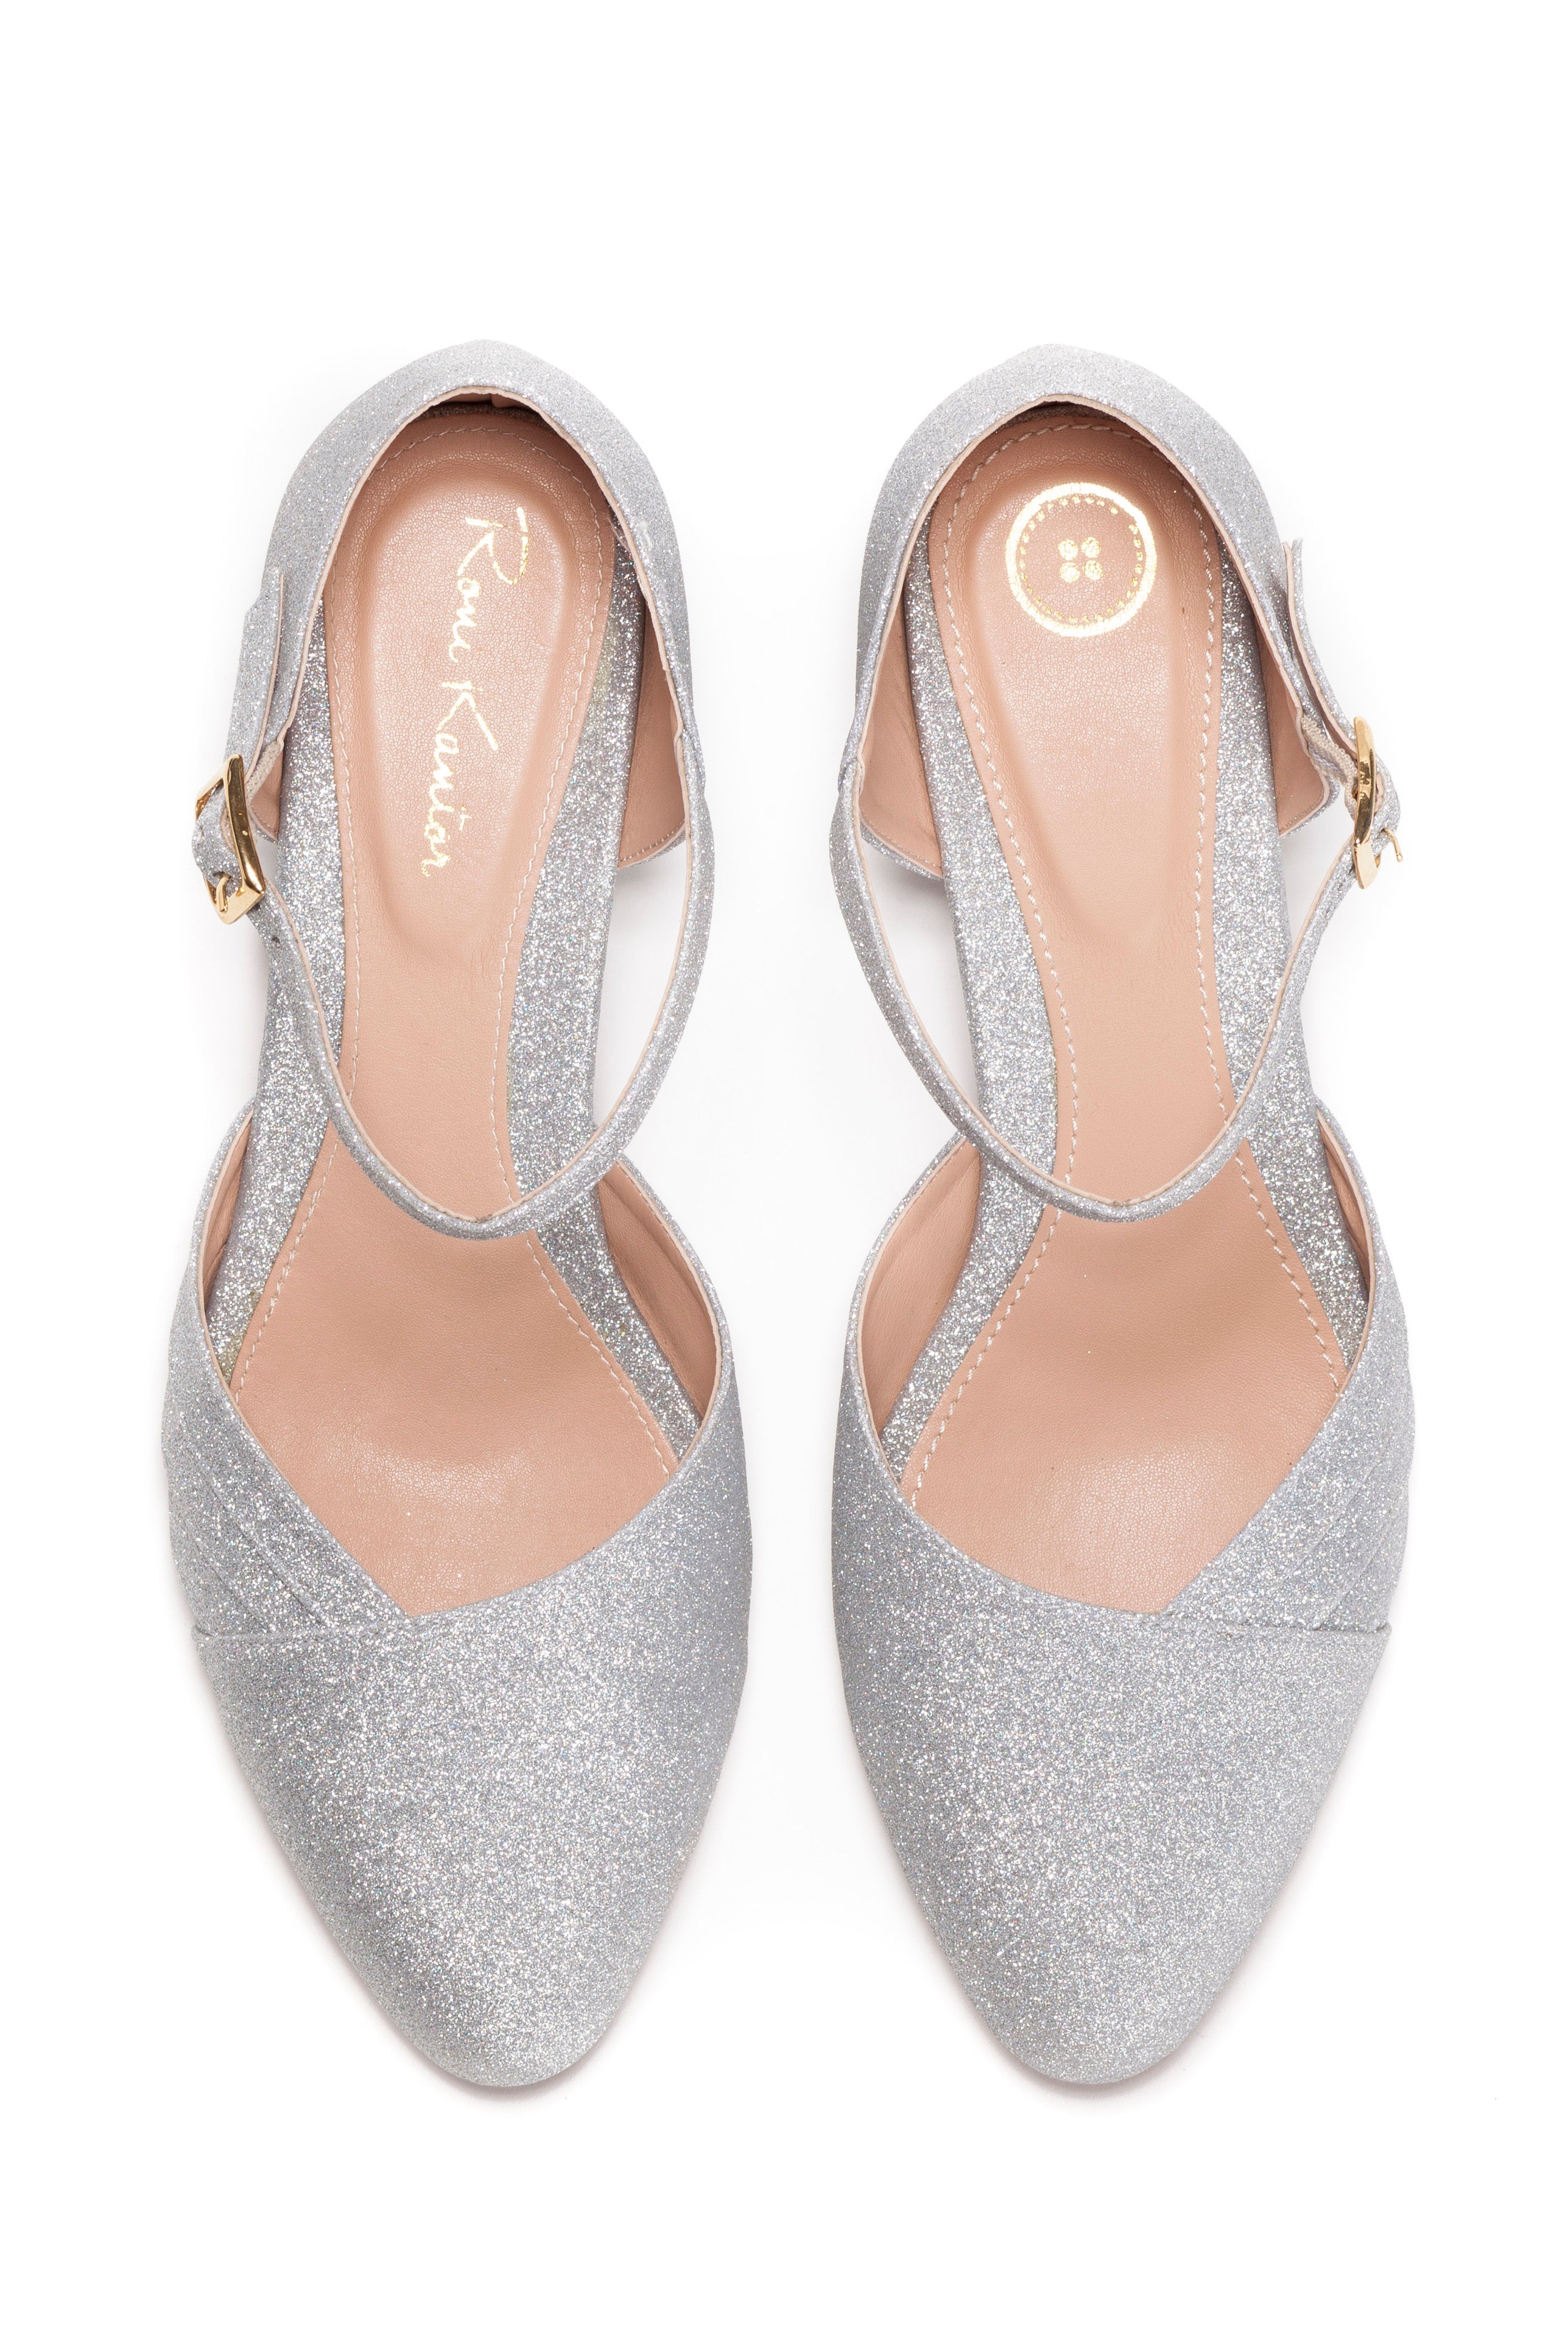 low heel glitter shoes